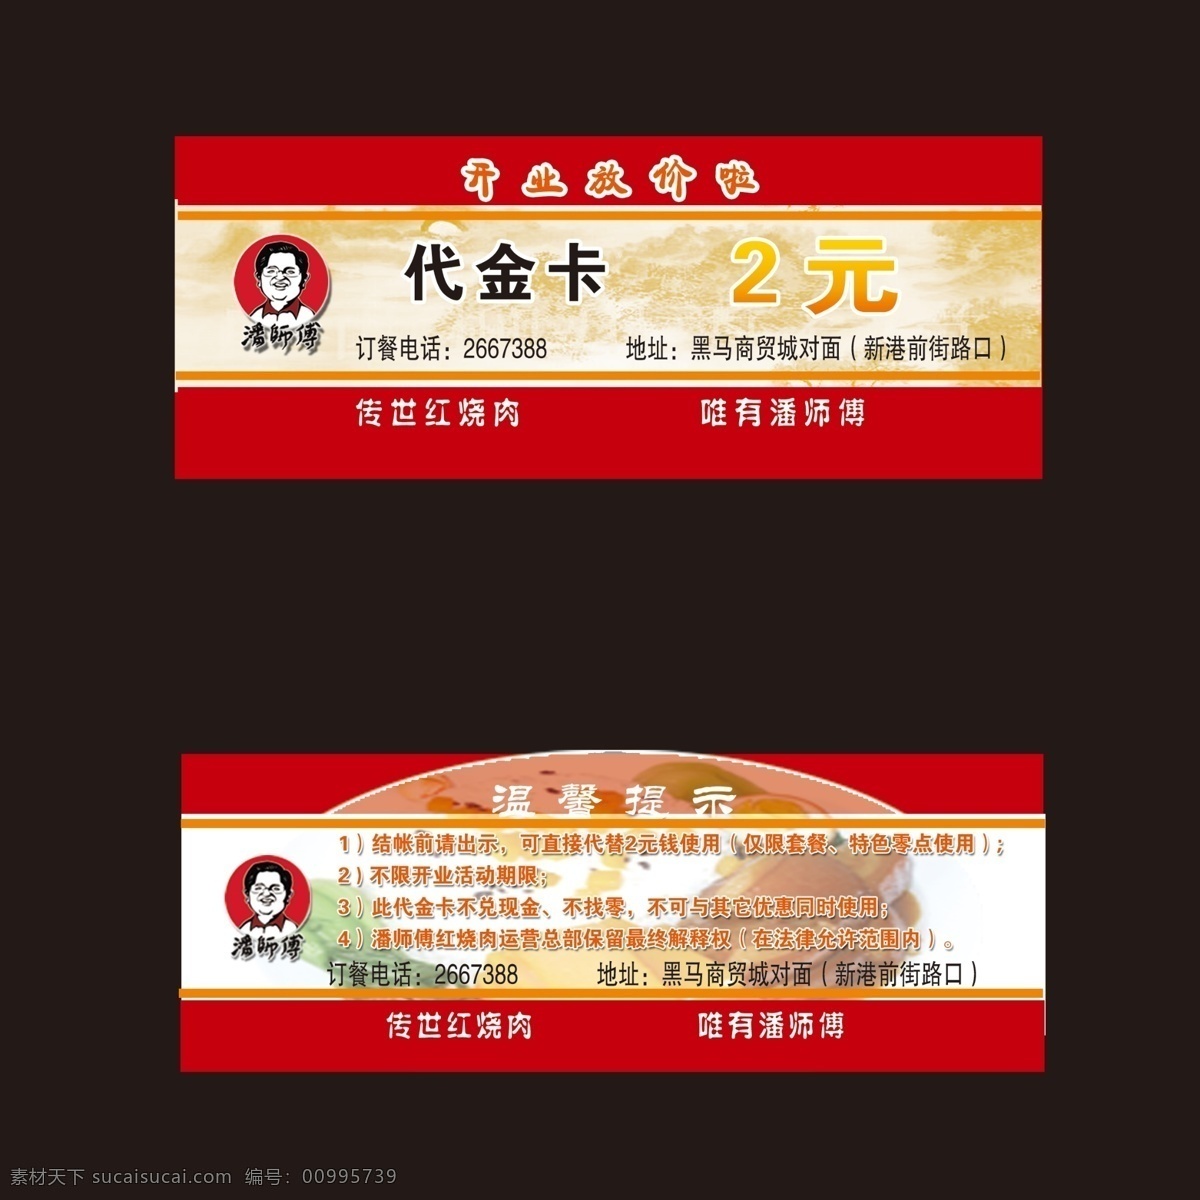 代金卡 潘师傅 潘师傅标志 美食 传世 红烧 唯有 潘 师傅 名片卡片 广告设计模板 源文件